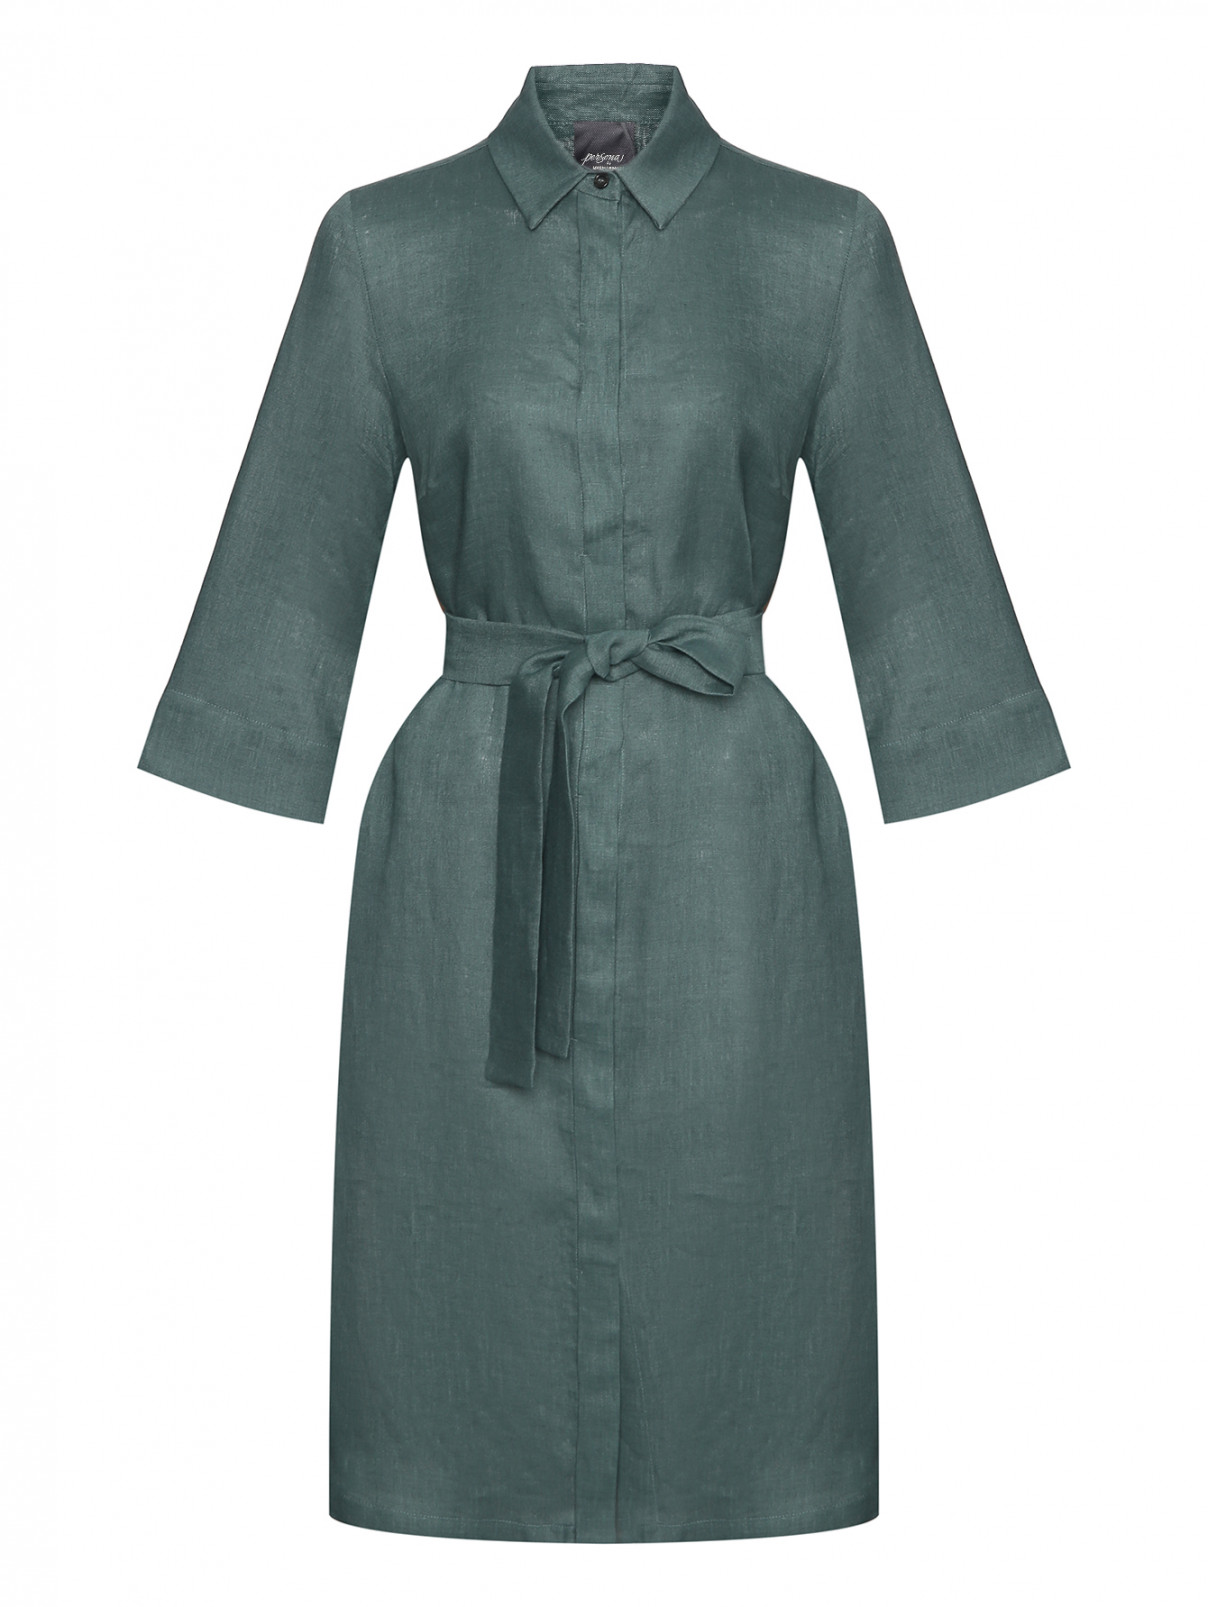 Платье из льна с поясом Persona by Marina Rinaldi  –  Общий вид  – Цвет:  Зеленый